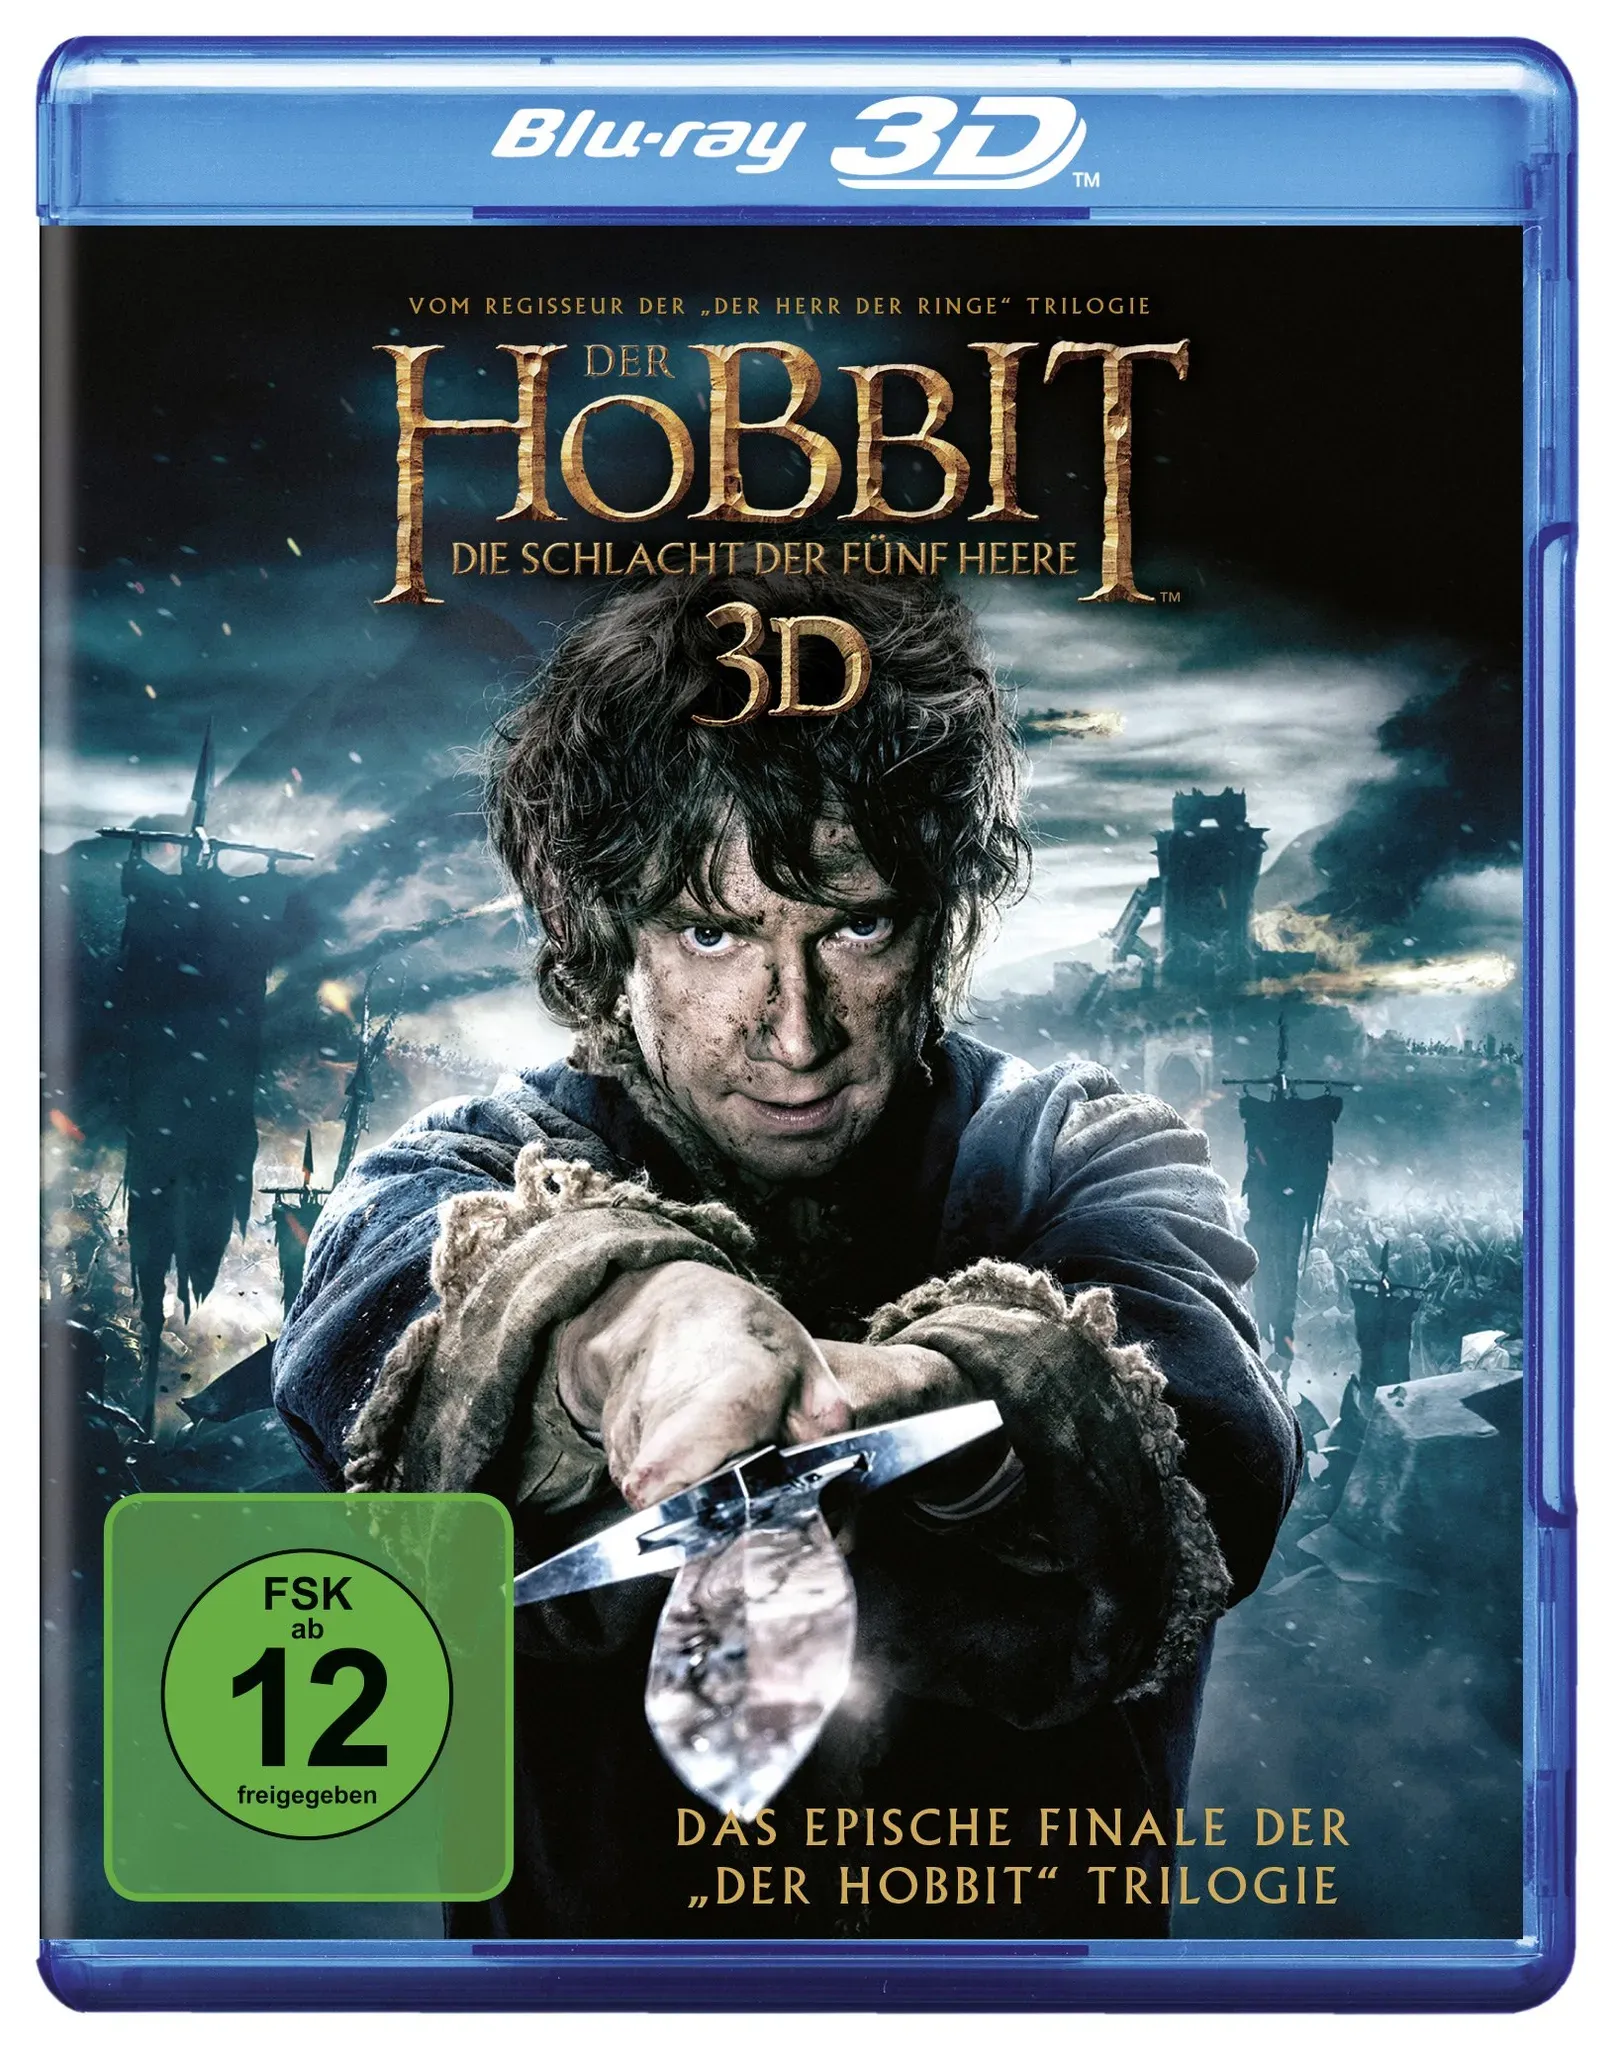 Der Hobbit 3 - Die Schlacht der fünf Heere [3D Blu-ray] (Neu differenzbesteuert)